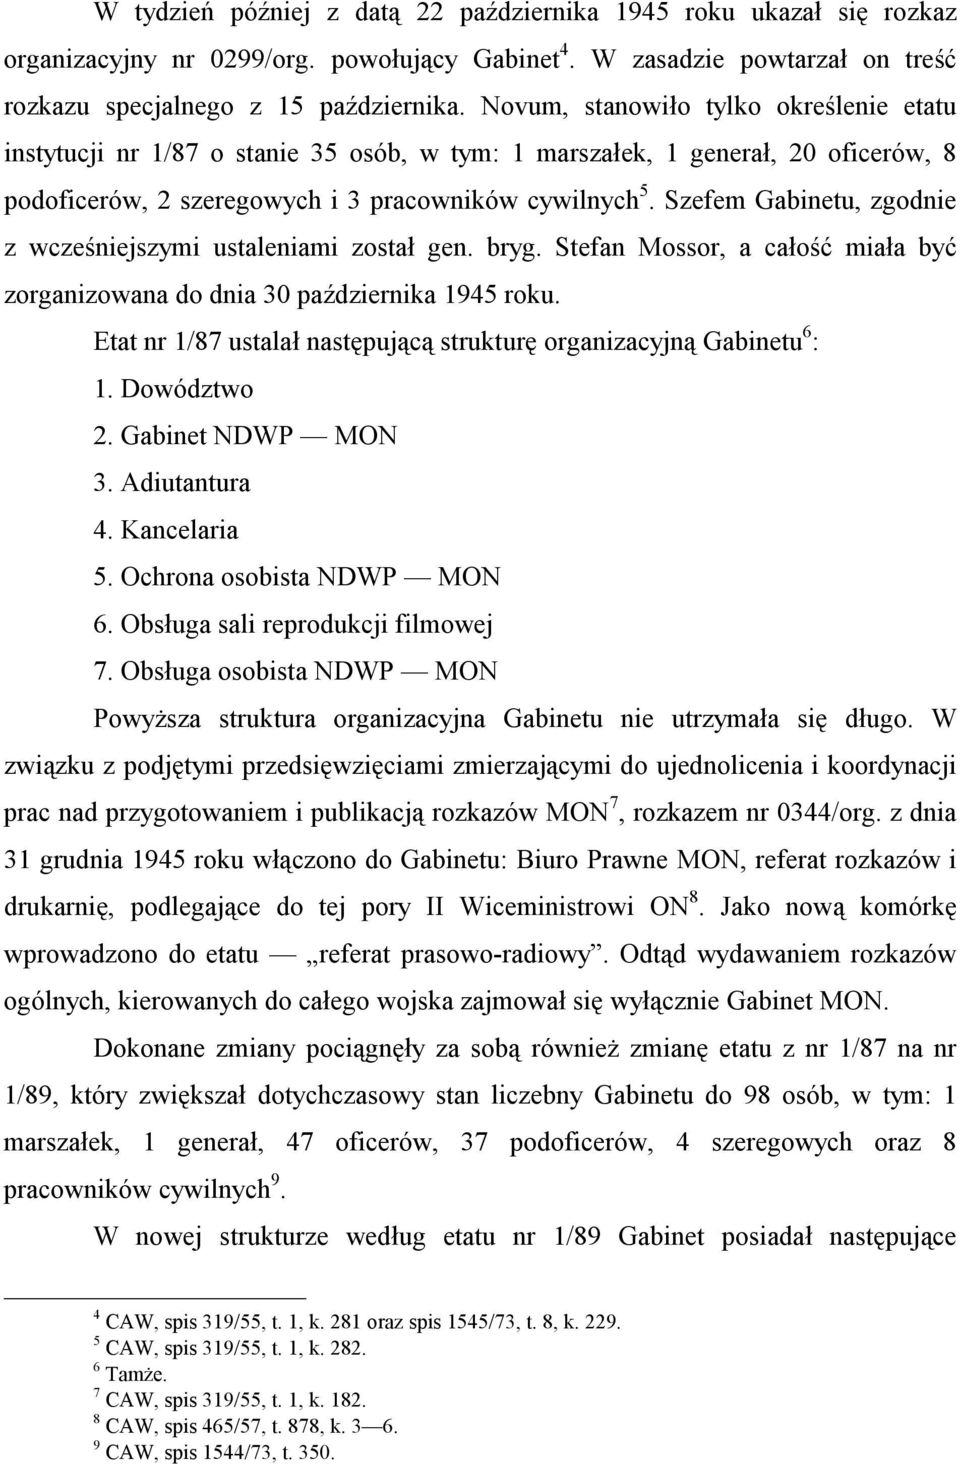 Szefem Gabinetu, zgodnie z wcześniejszymi ustaleniami został gen. bryg. Stefan Mossor, a całość miała być zorganizowana do dnia 30 października 1945 roku.